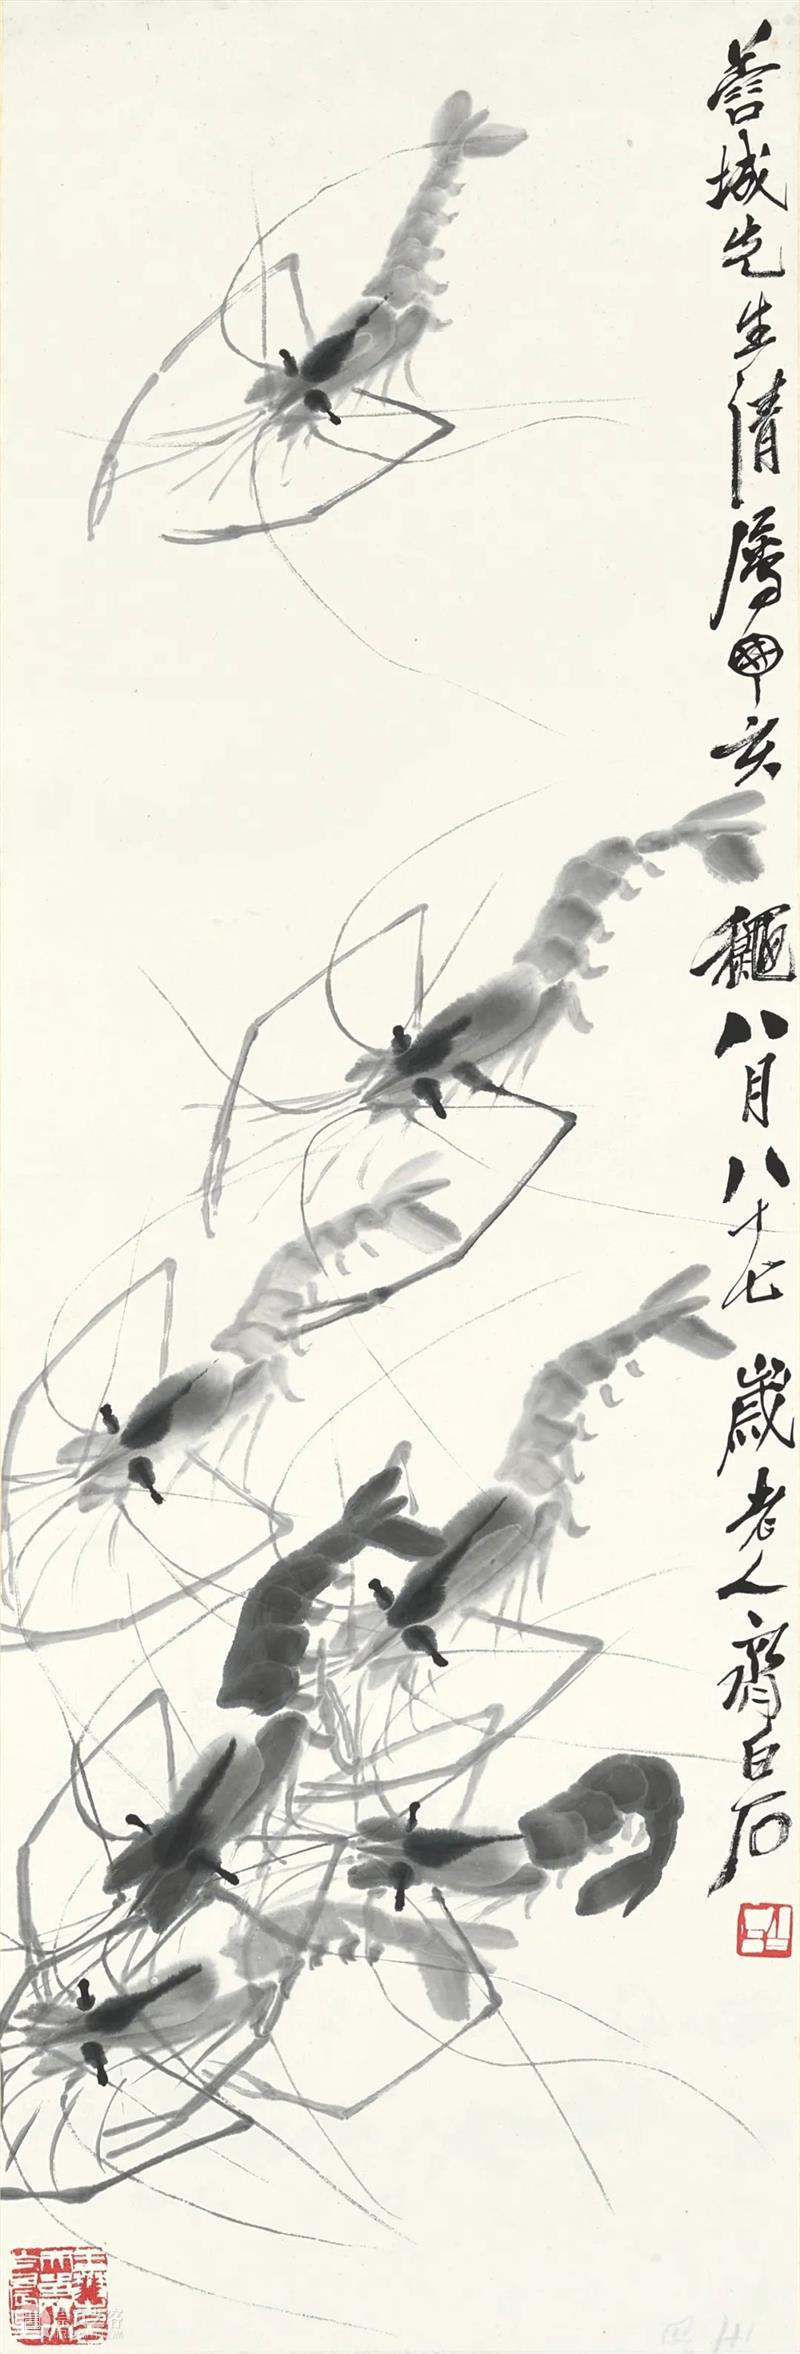 【八月重点推荐】清平乐 ─ 中国书画网上拍卖 崇真艺客